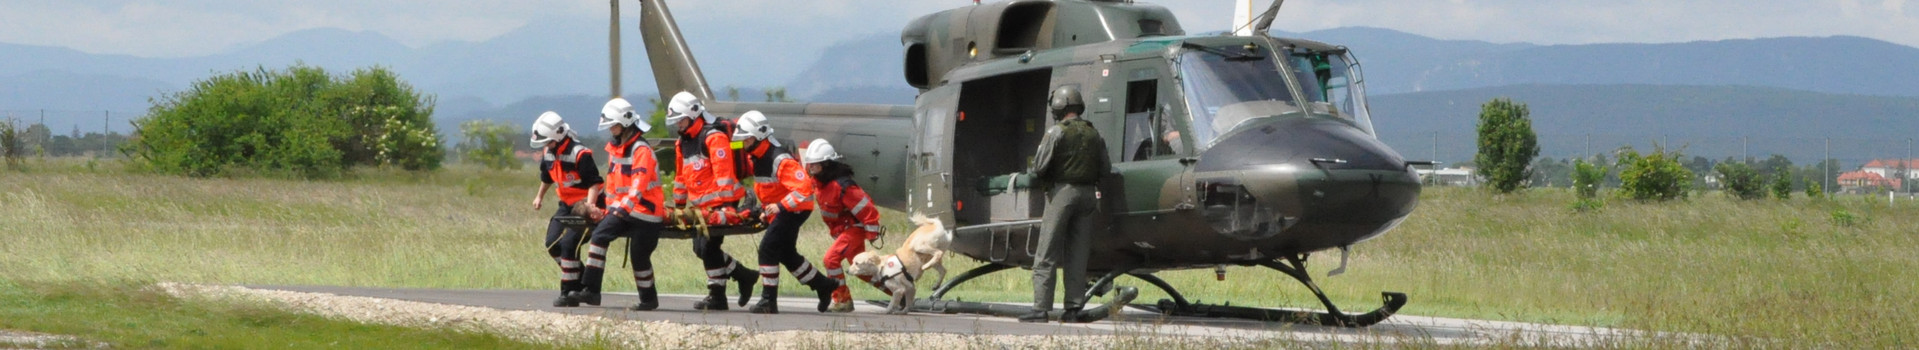 Bei einer Hubschrauberübung laufen fünf Johanniter und ein Rettungshund mit einer verletzten Person vom eben gelandeten Hubschrauber weg.